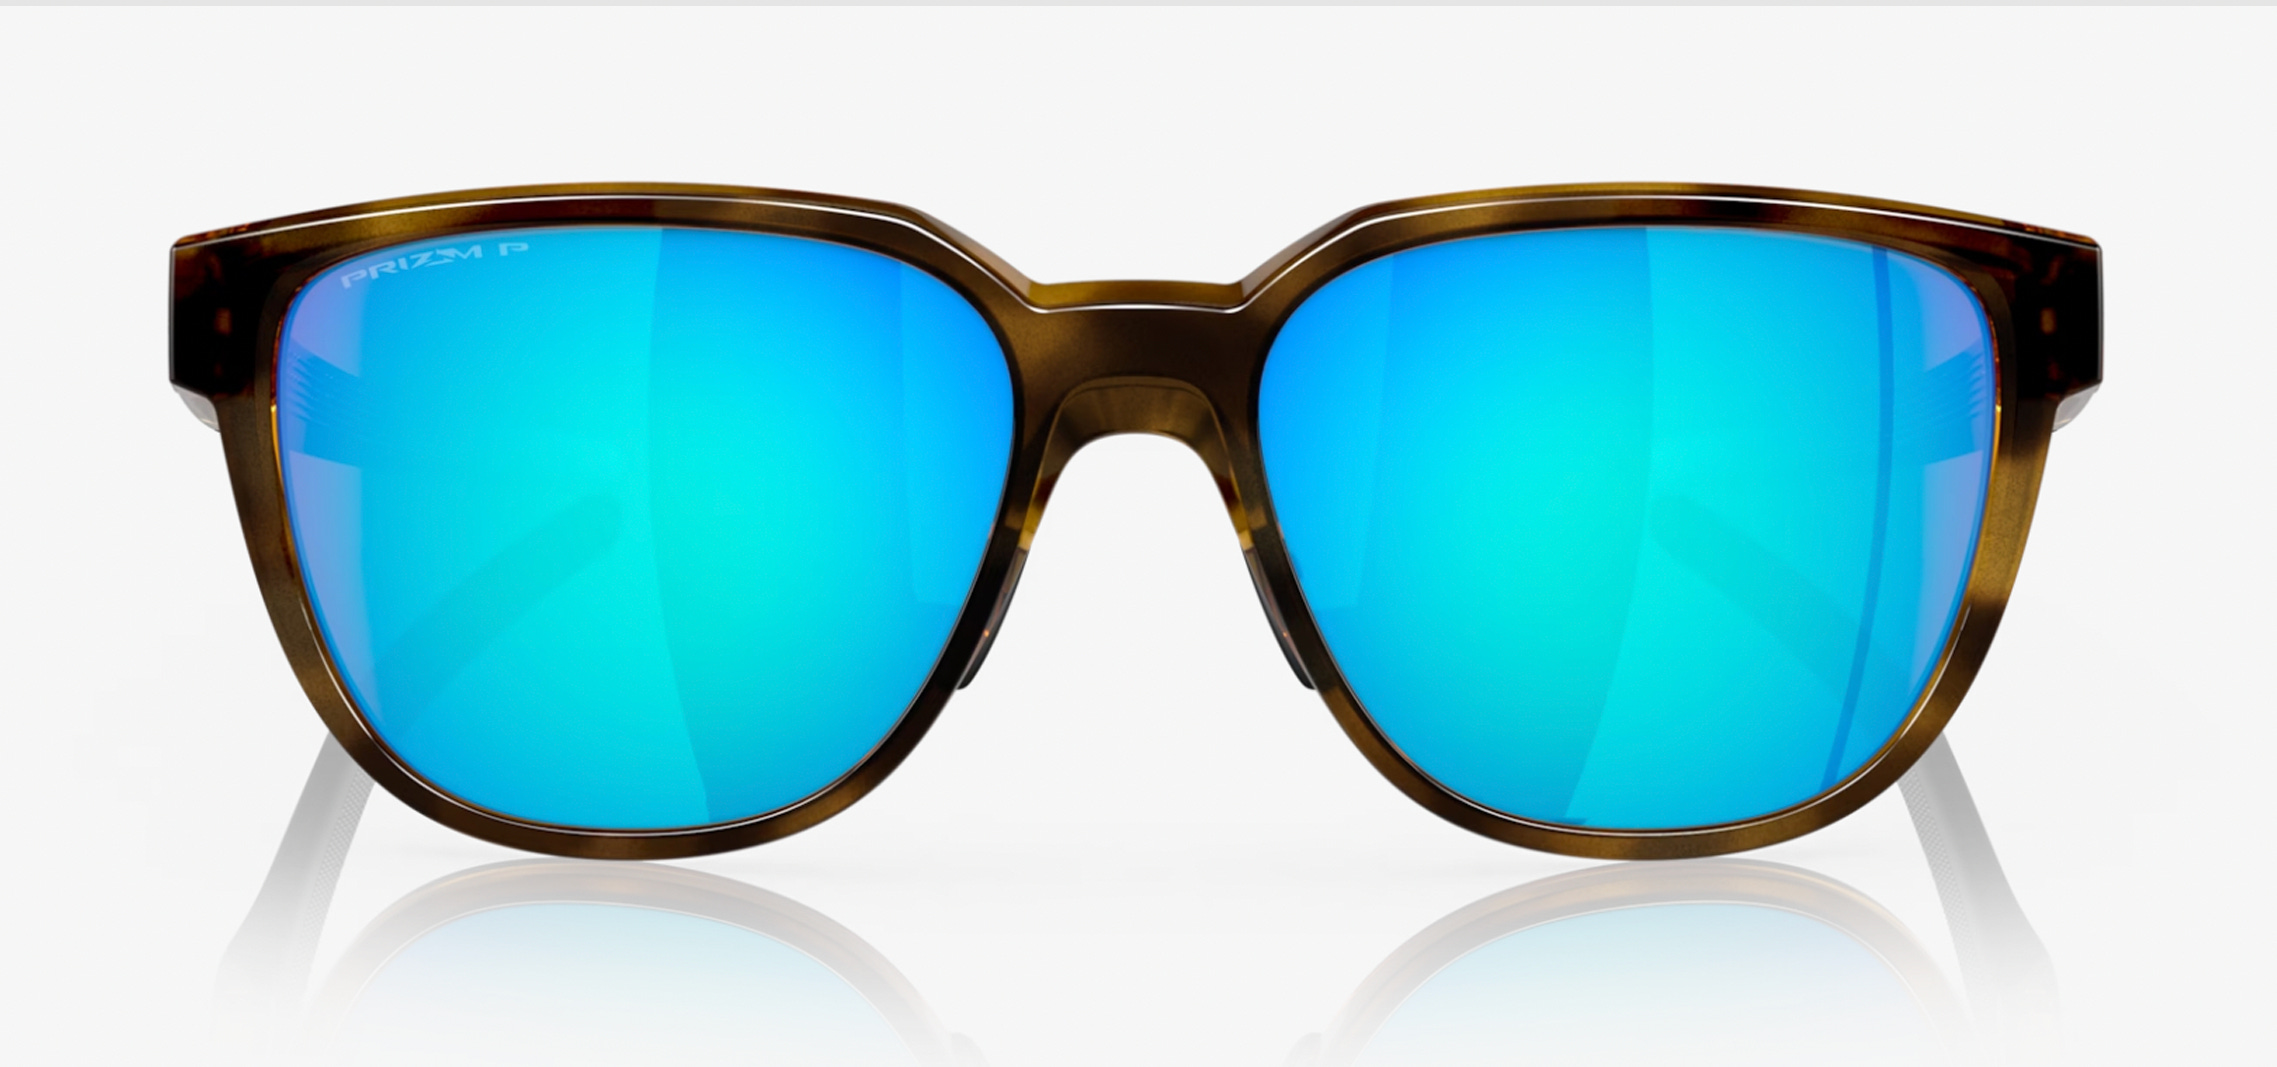 The Best Running Sunglasses for Summer 2023